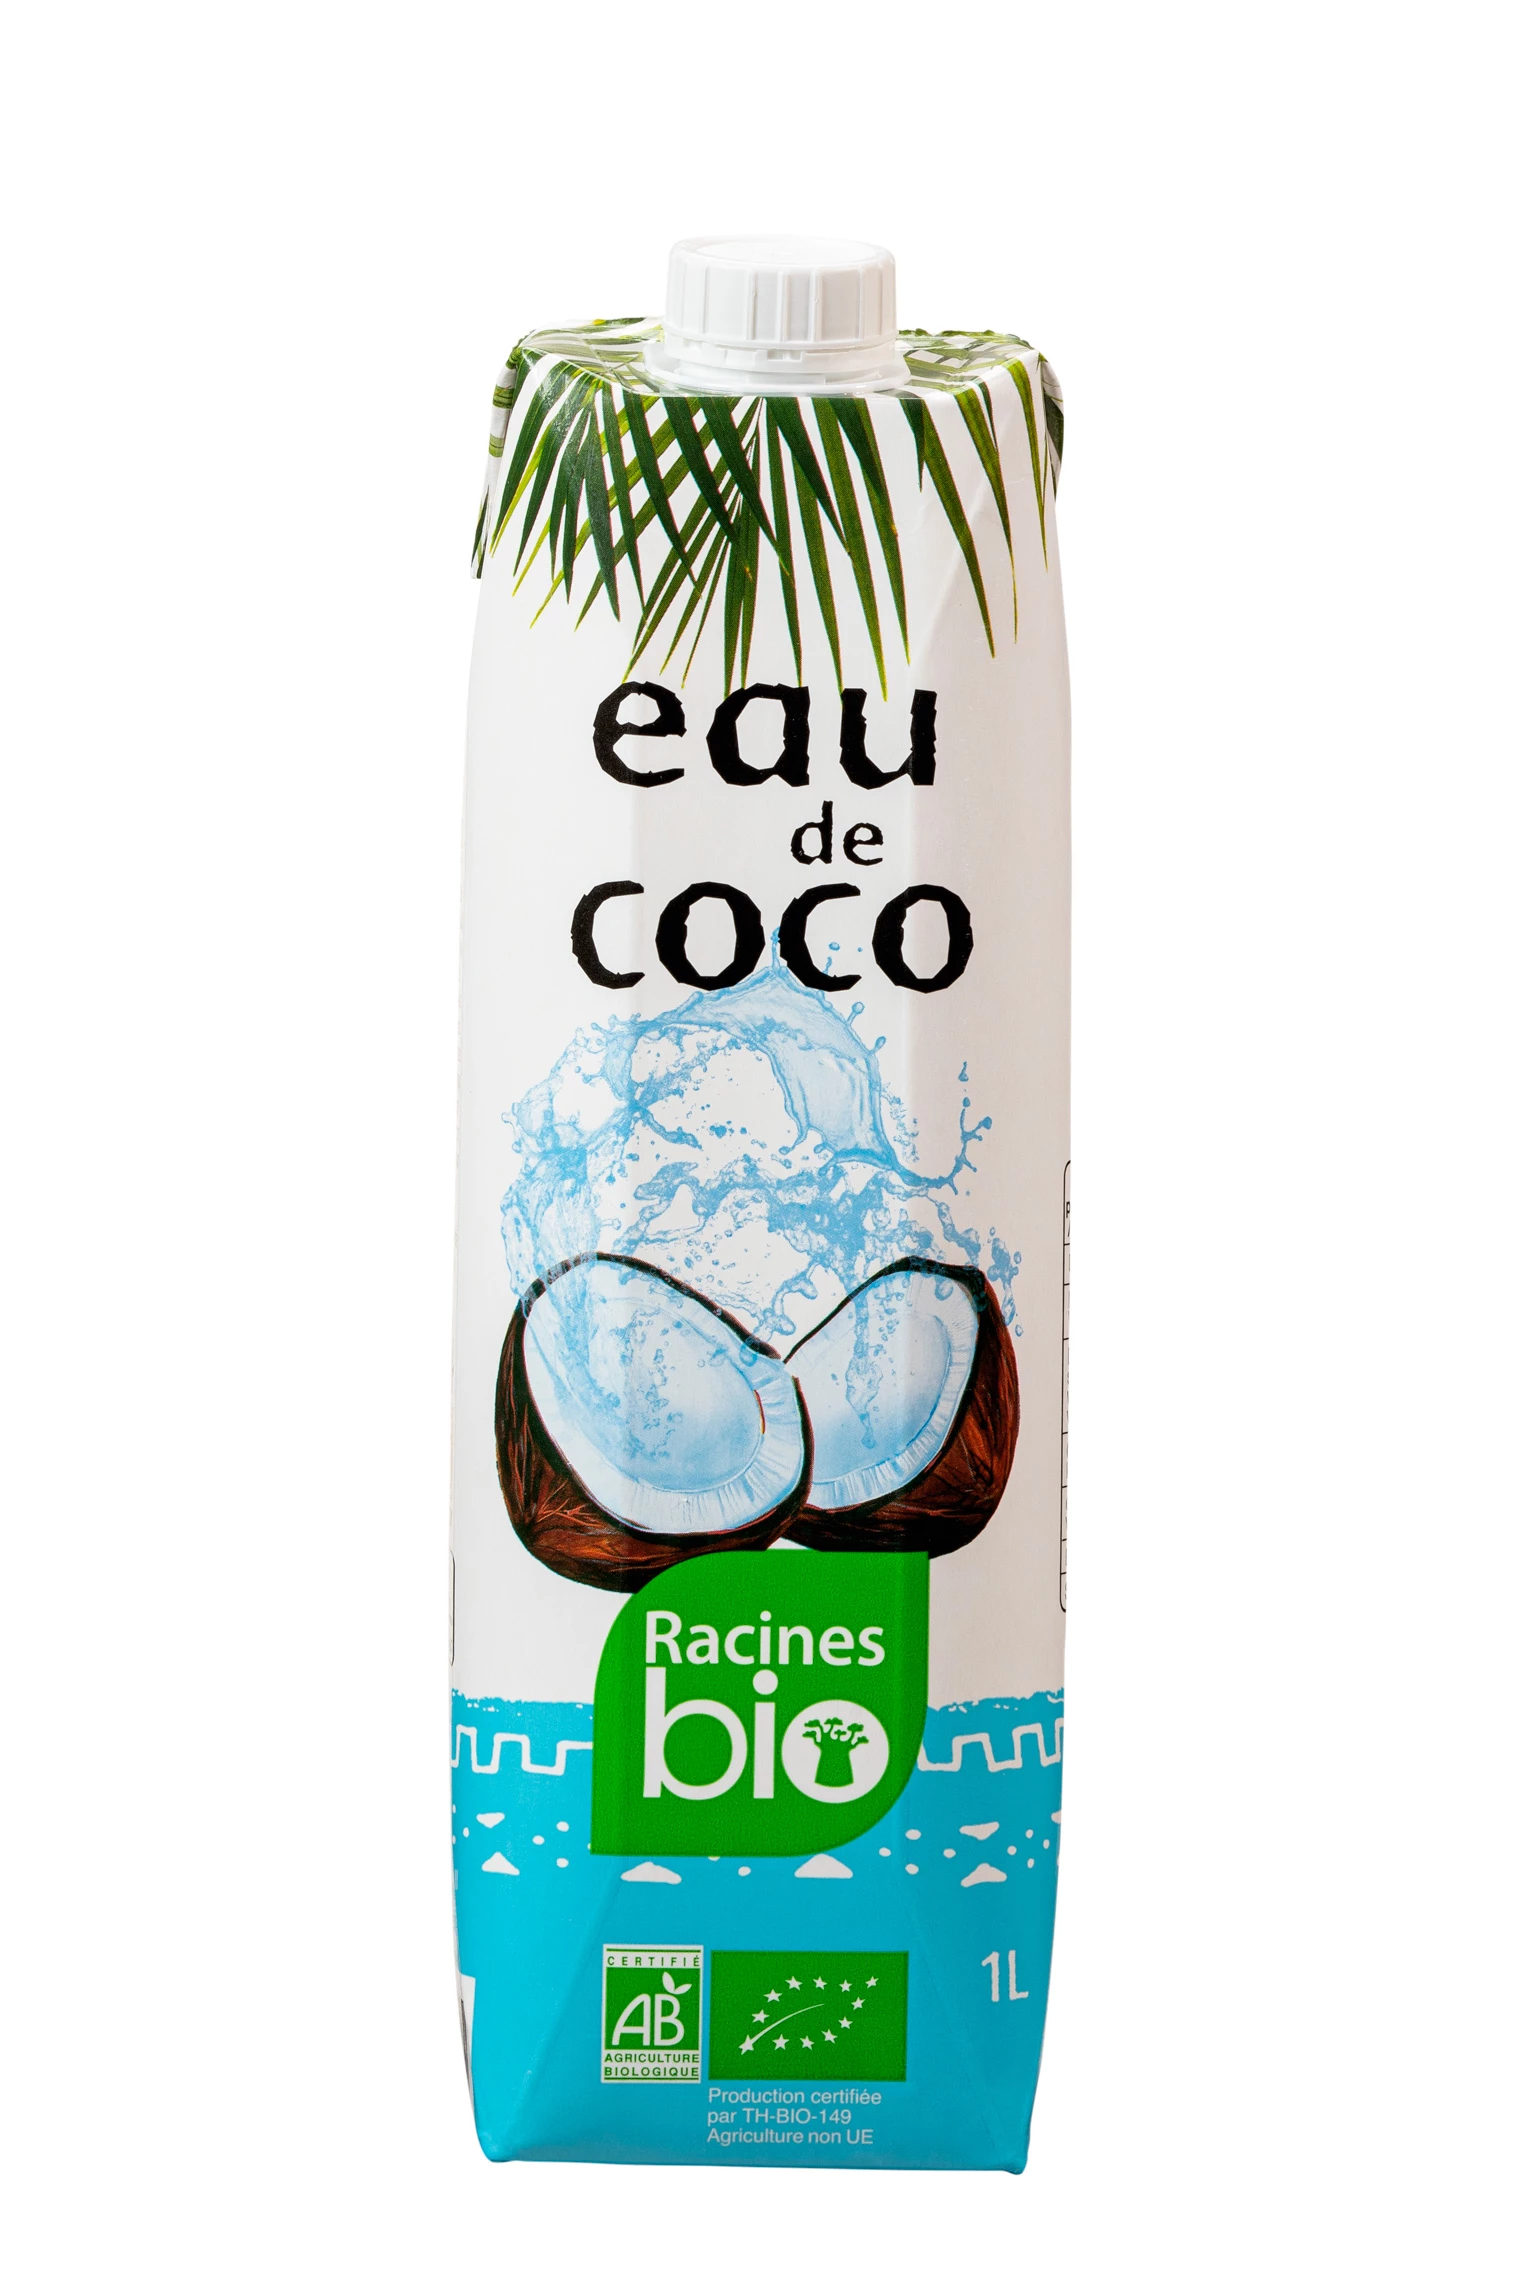 Água de Coco (12 X 1 L) - Racines Bio